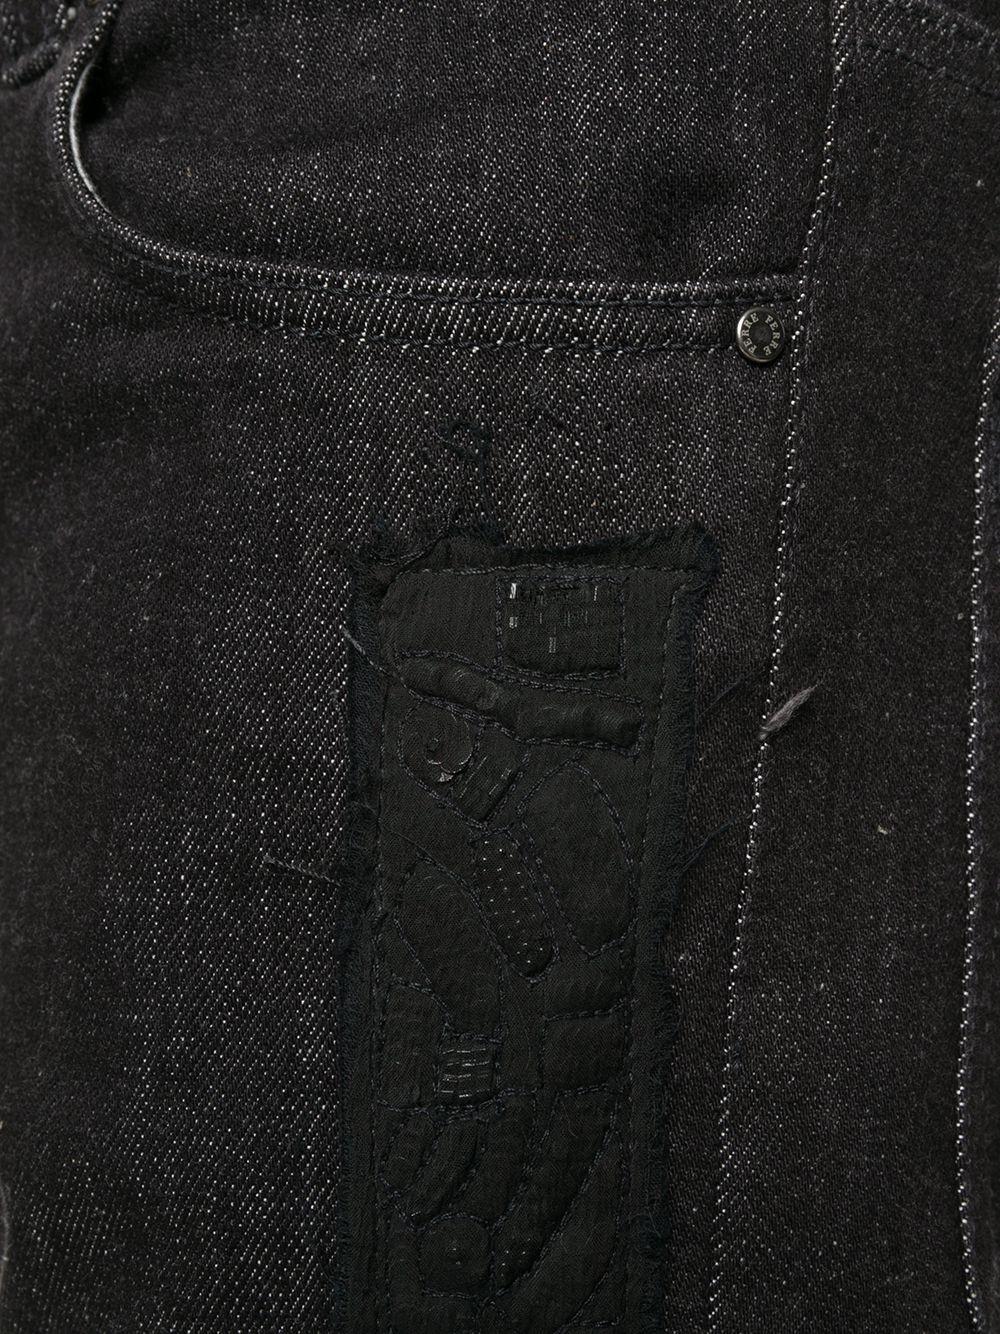 фото Gianfranco ferré pre-owned джинсы 1990-х годов с аппликацией